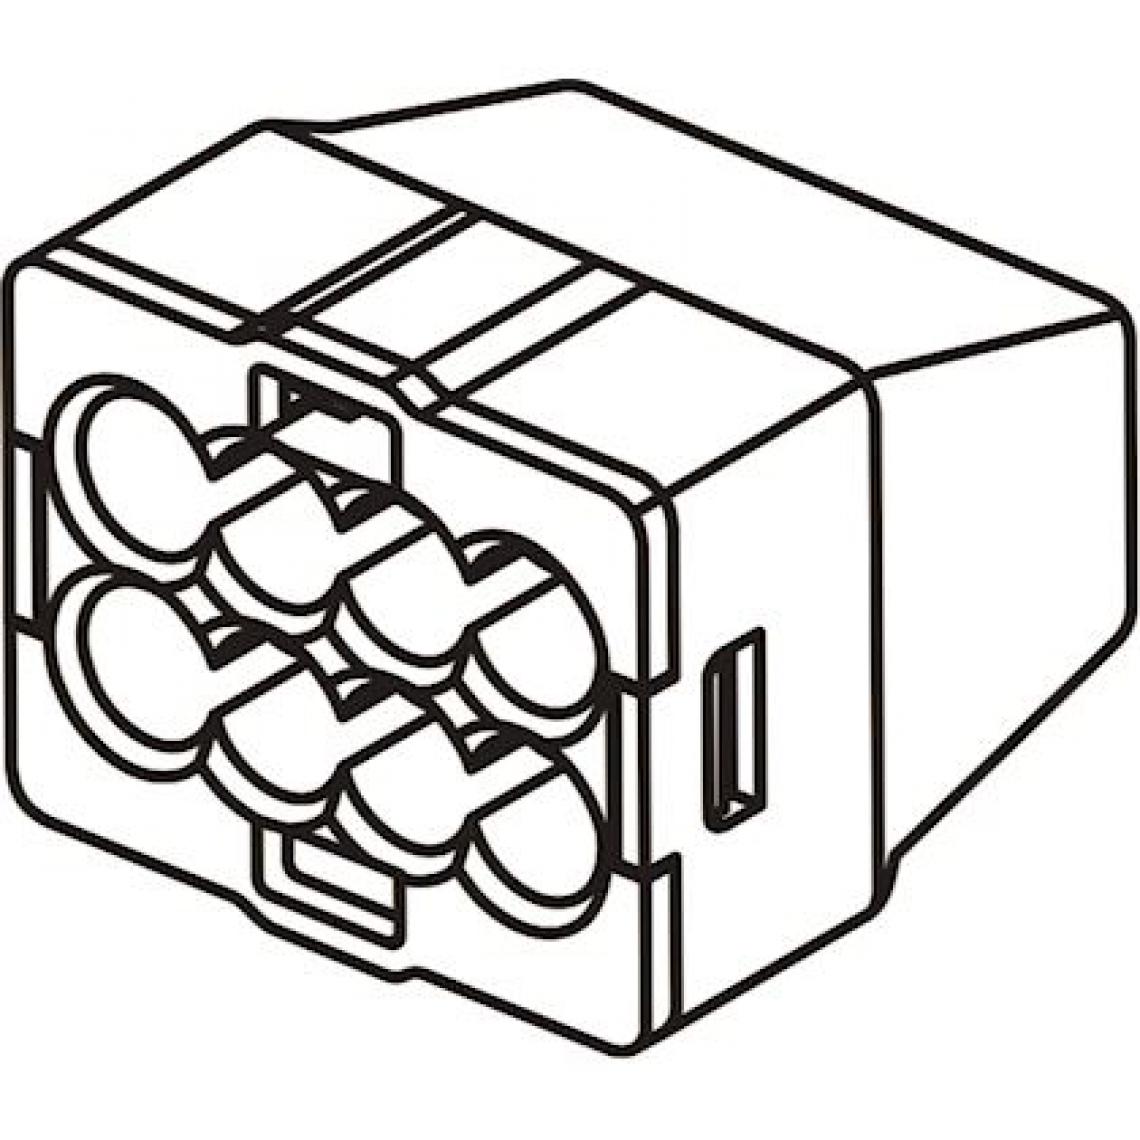 Bizline - borne de connexion - automatique - 3 entrées - 0.5 à 2.5 mm2 - orange - boite de 1000 - bizline 103423 - Accessoires de câblage